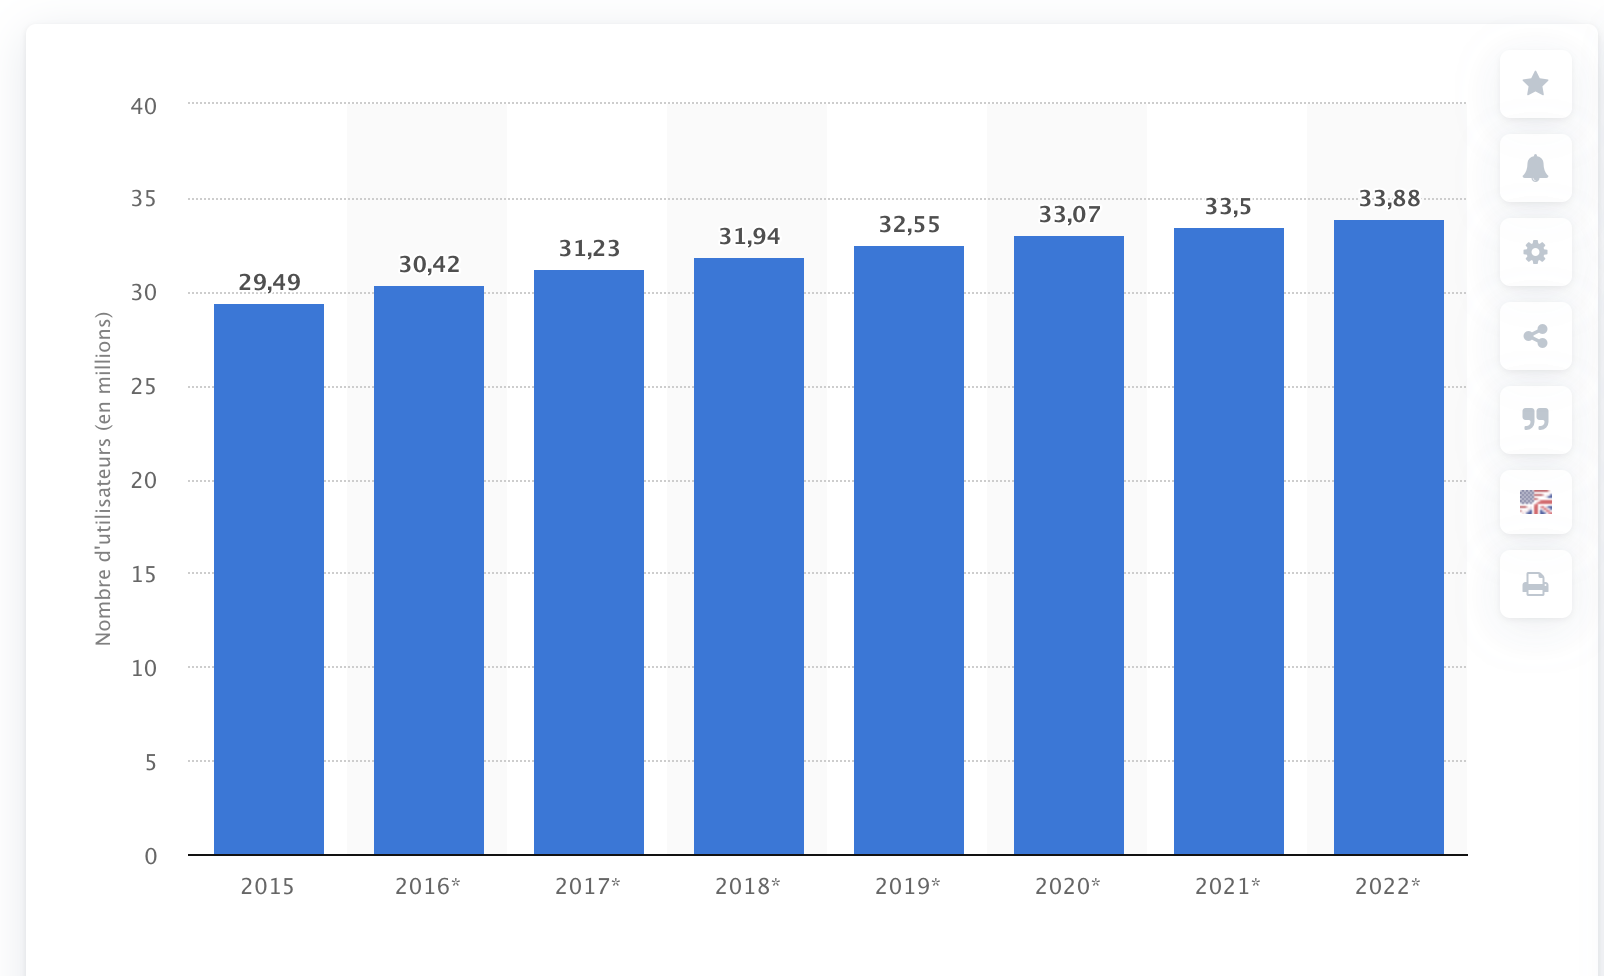 le nombre d'utilisateurs de Facebook en France de 2015 à 2022